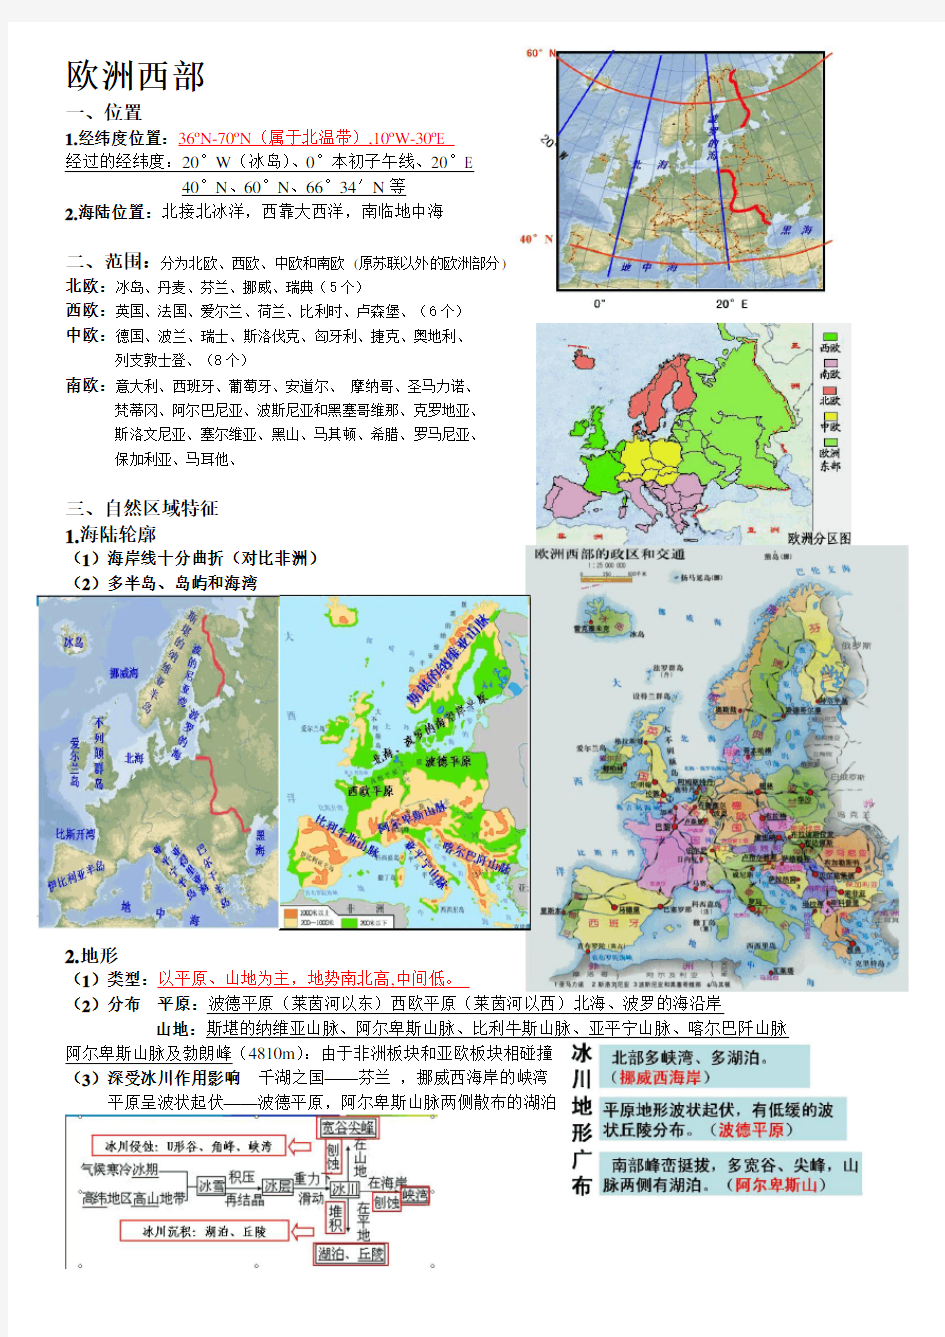 (完整版)欧洲西部区域地理知识总结精华